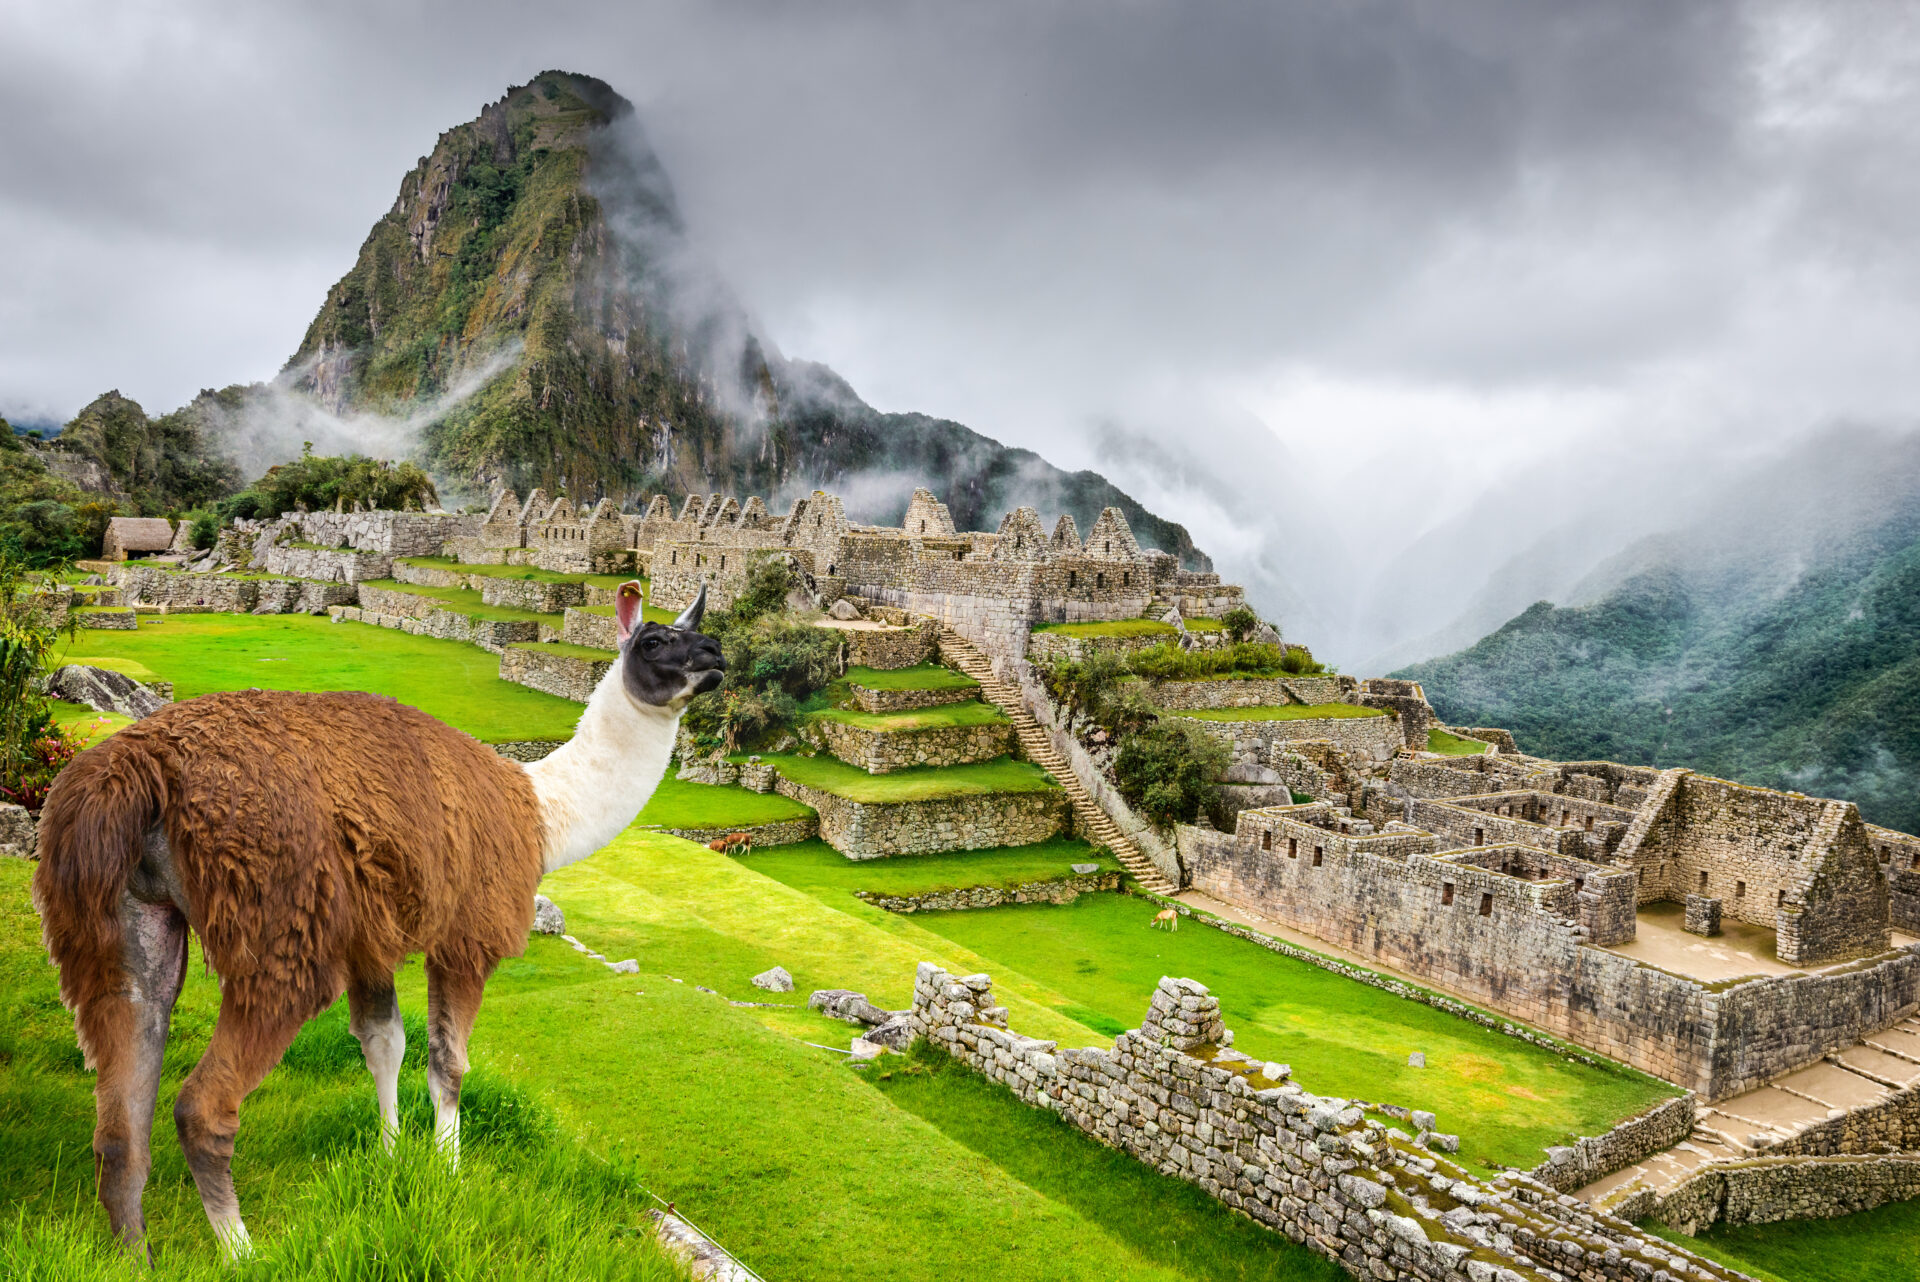 インカ帝国の歴史と暮らしを紐解く鍵